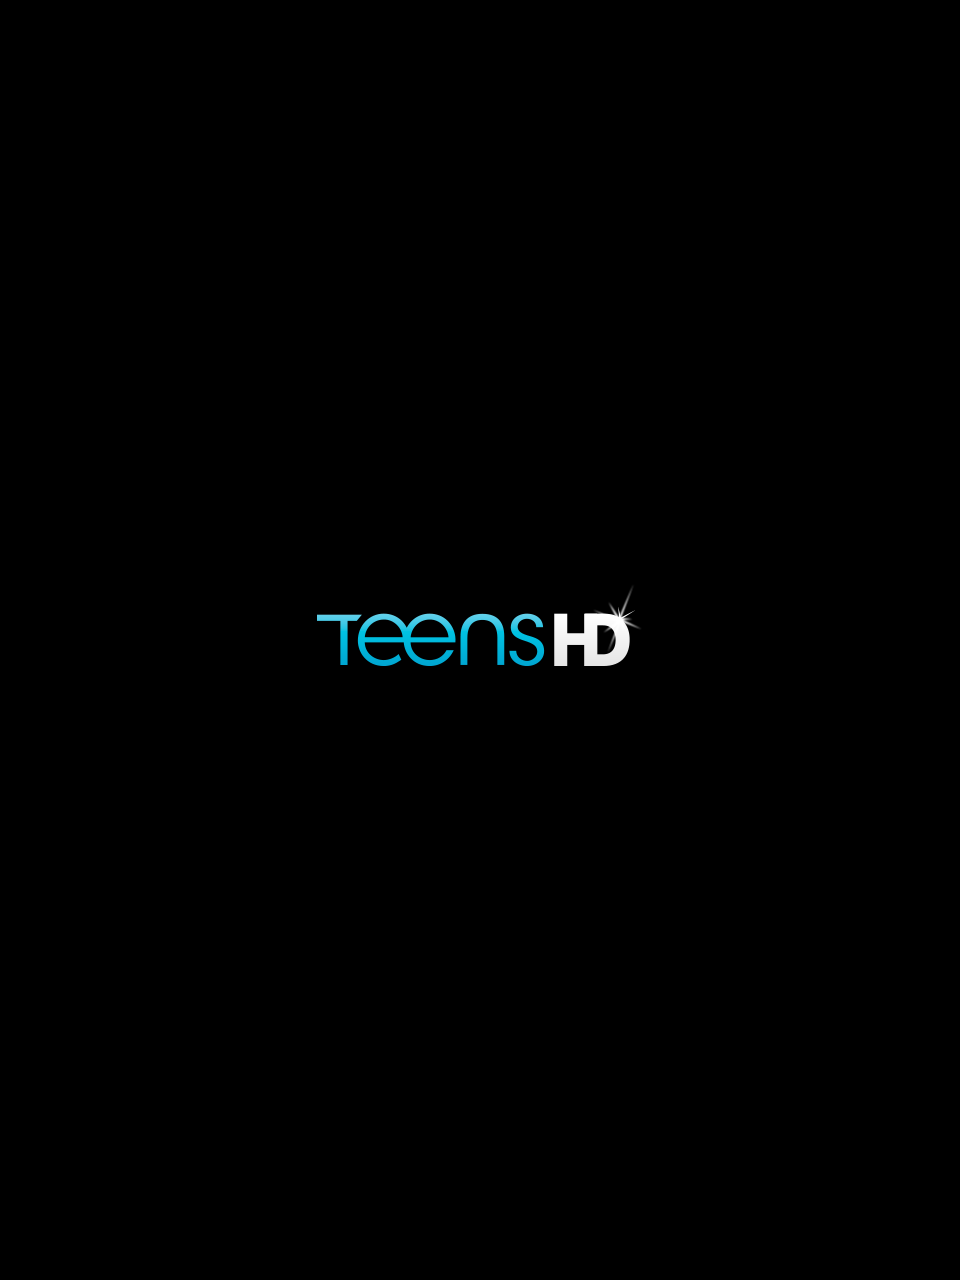 Teens HD